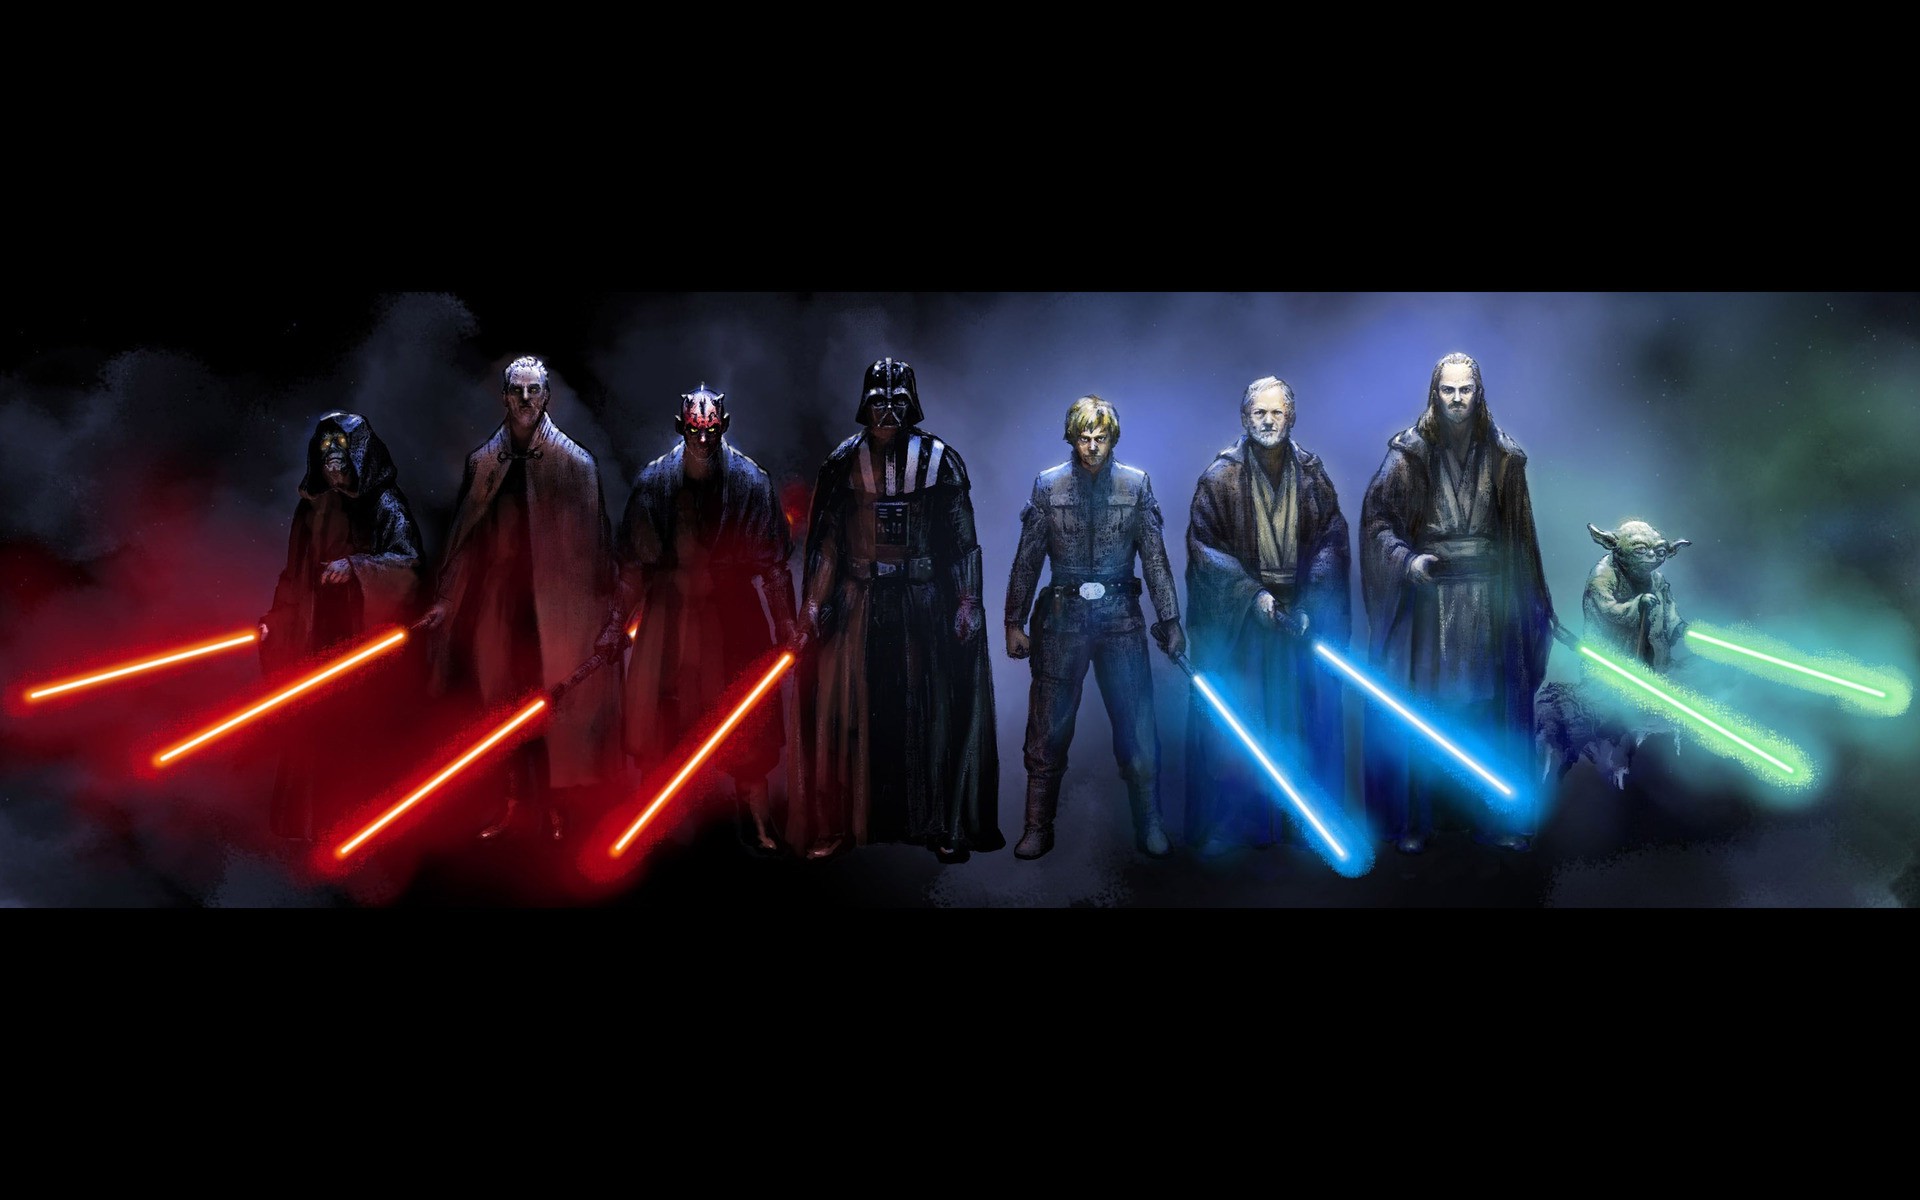 Yoda, Obi Wan Kenobi, Luke Skywalker, Qui Gon Jinn, Darth Vader, Darth Maul, Darth Sidious, Count Dooku, Star Wars Wallpaper